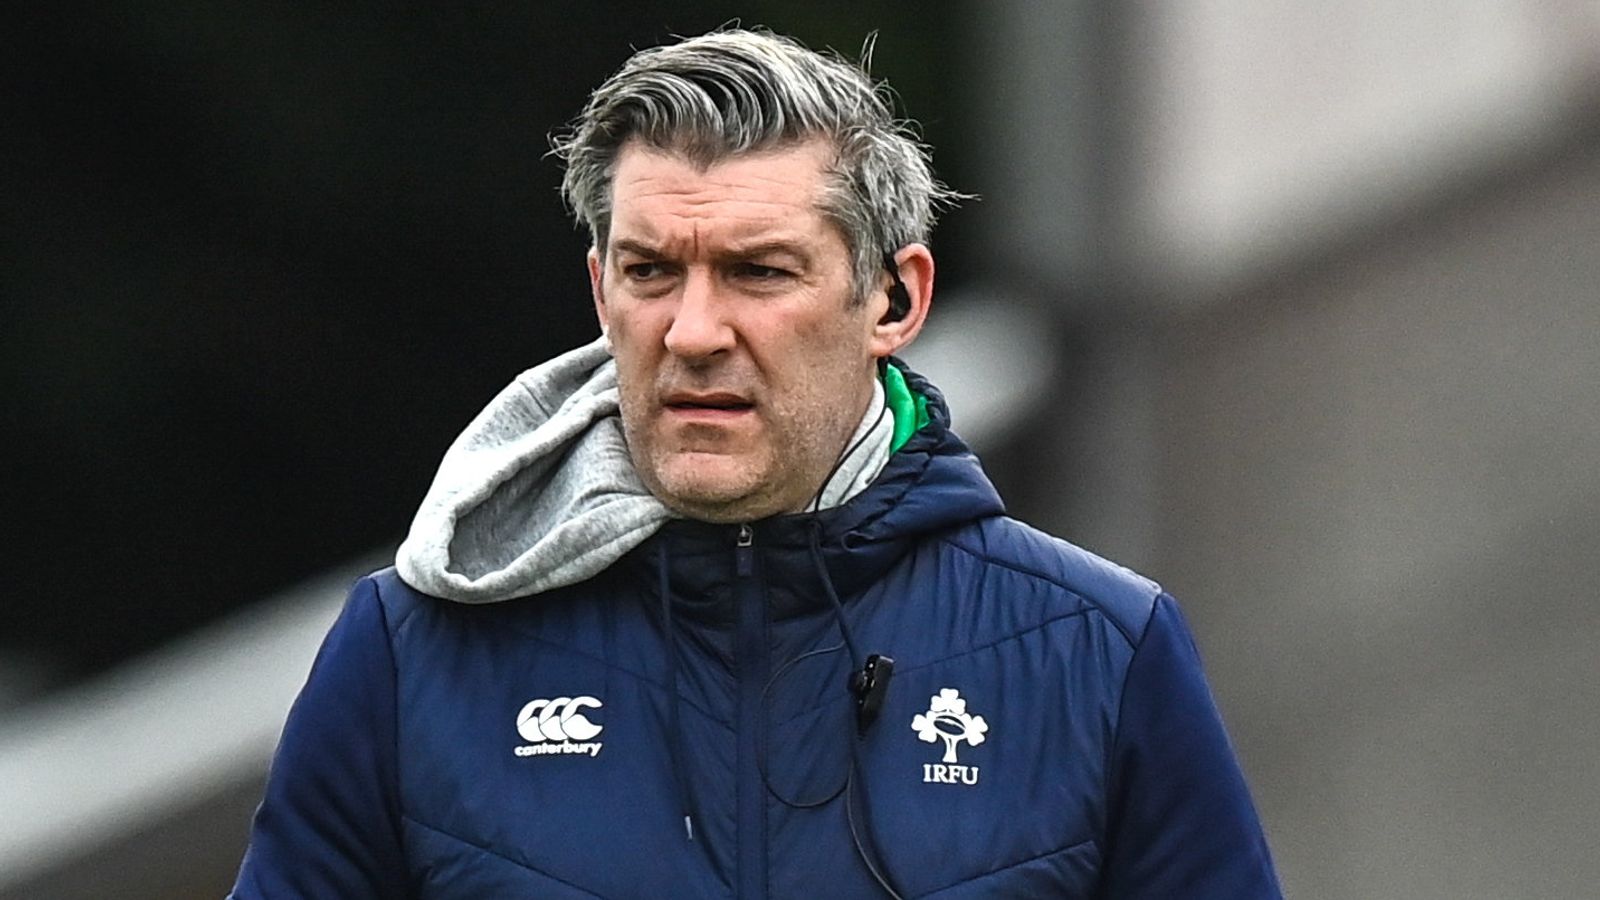 L’IRFU n’est pas sexiste, déclare Greg McWilliams, après qu’un joueur anonyme ait exprimé ses inquiétudes dans un article du Telegraph |  Actualités du rugby à XV